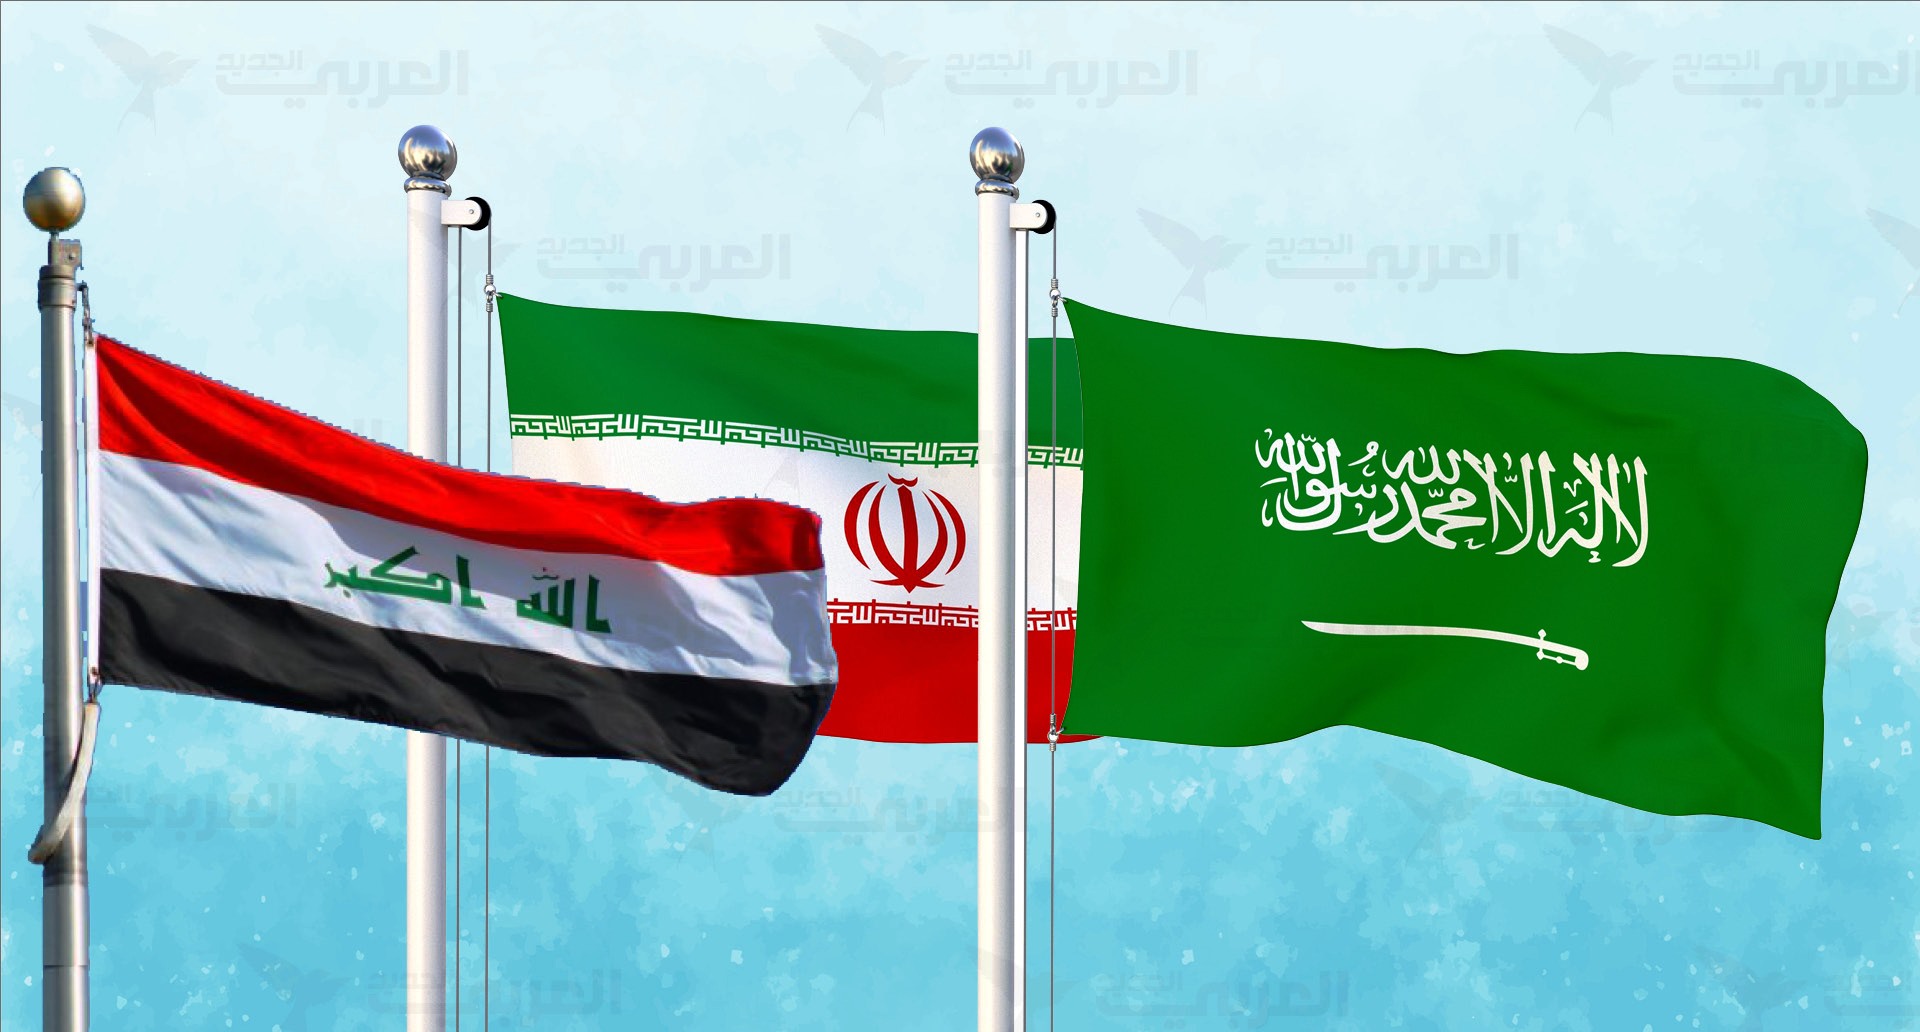 بعد احتضانه محادثات سعودية إيرانية.. توقعات بلعب العراق دوراً لاحتواء الاحتقان الإقليمي